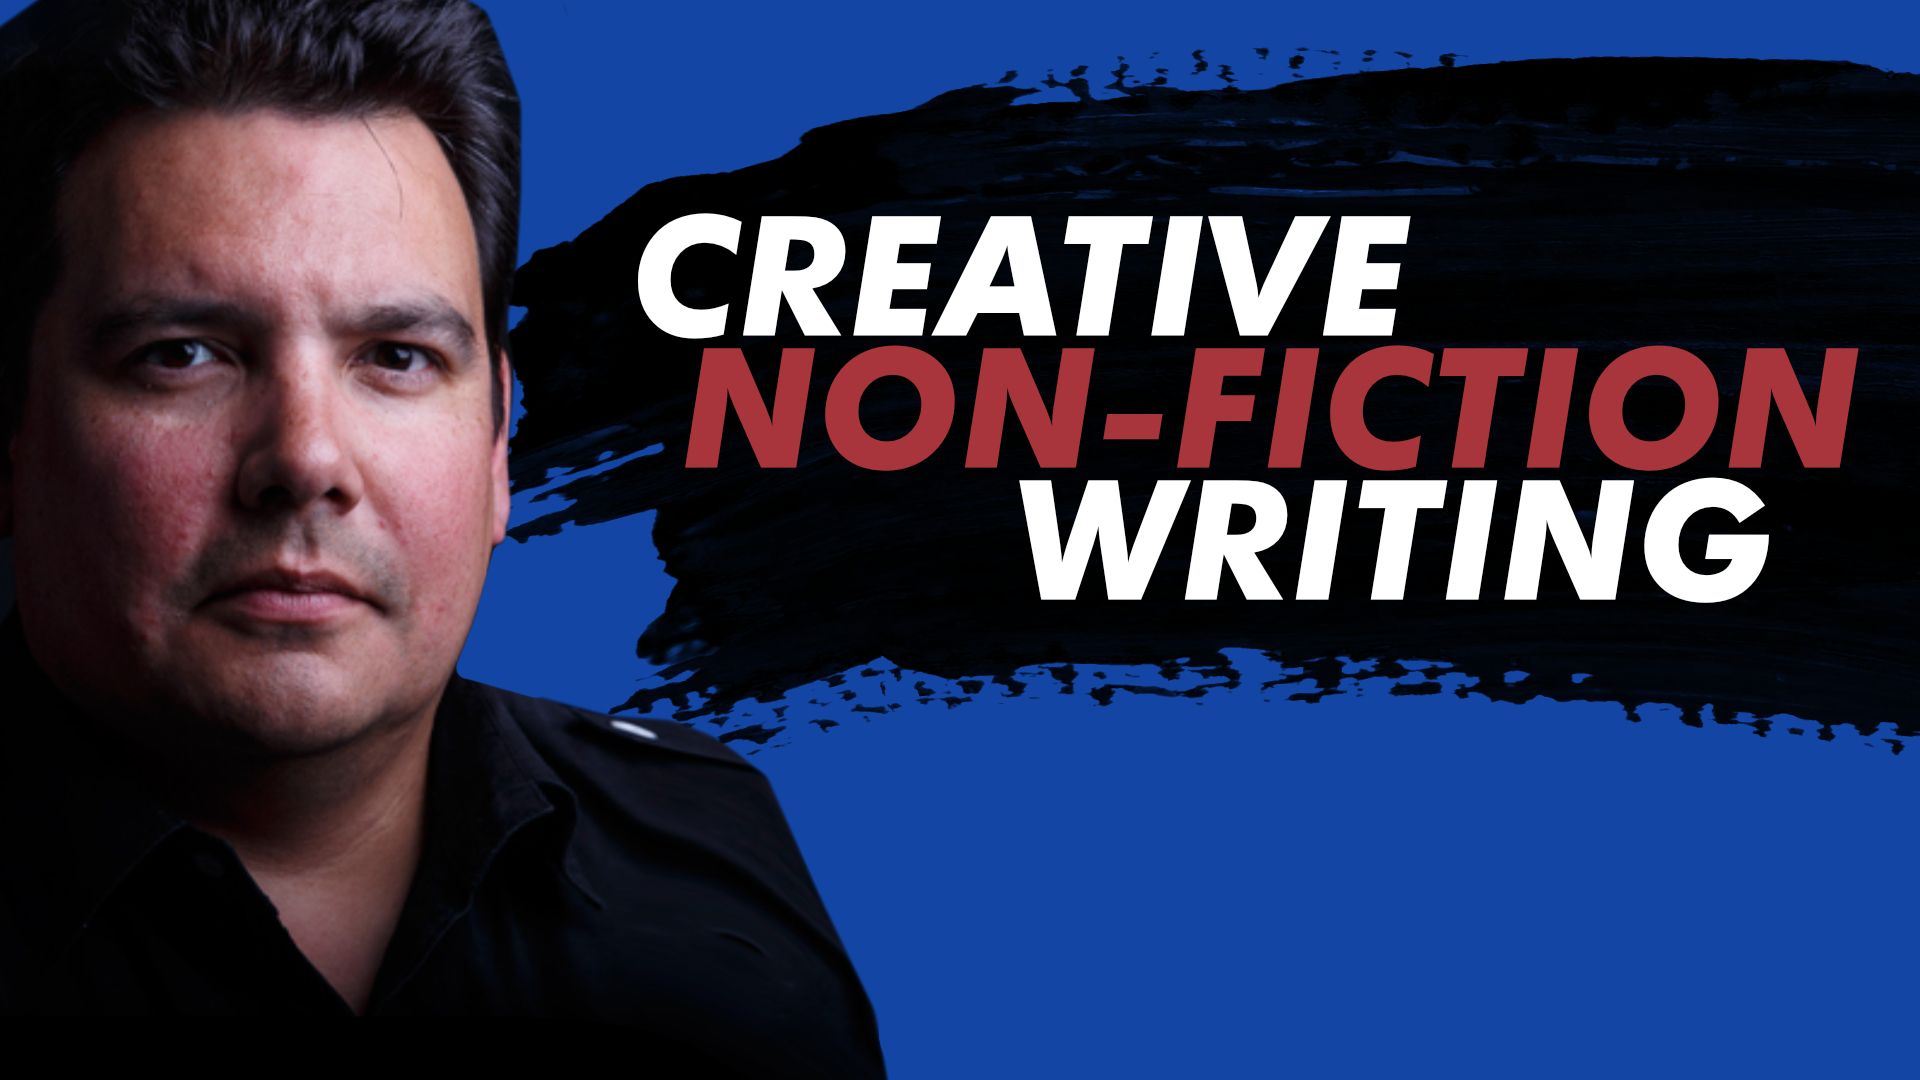 Writing Creative Non-fiction